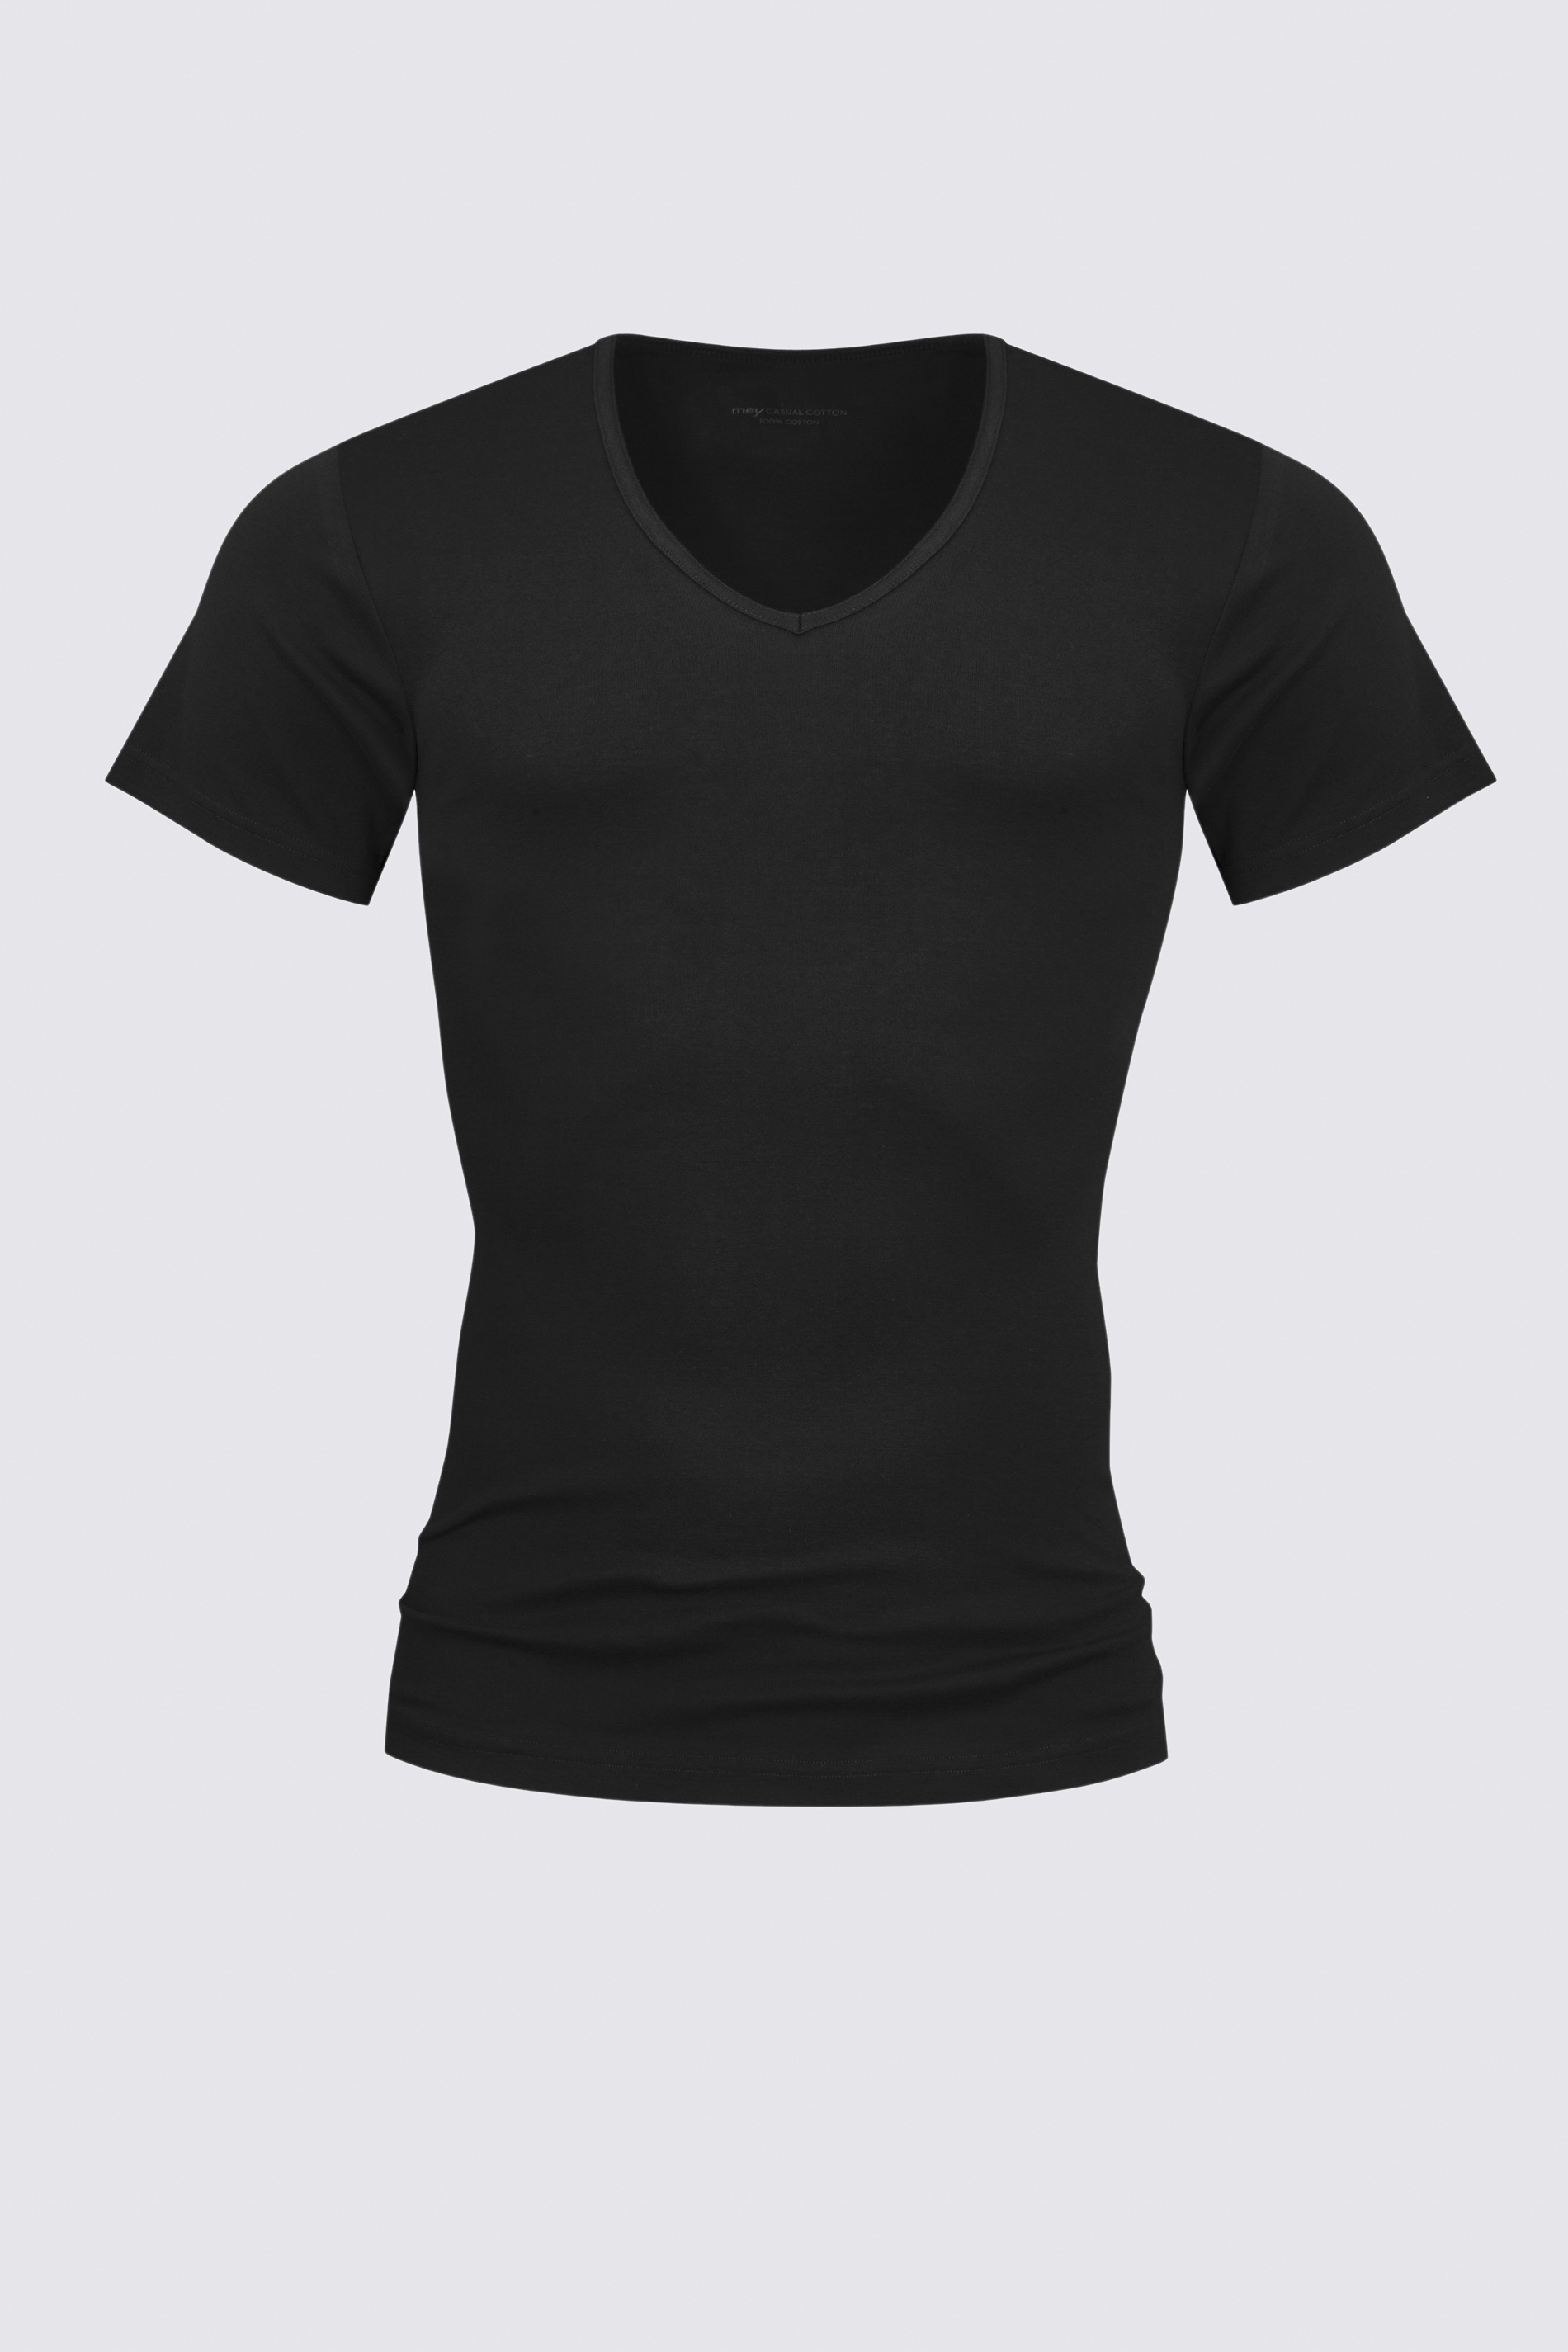 Shirt Zwart Serie Casual Cotton Uitknippen | mey®